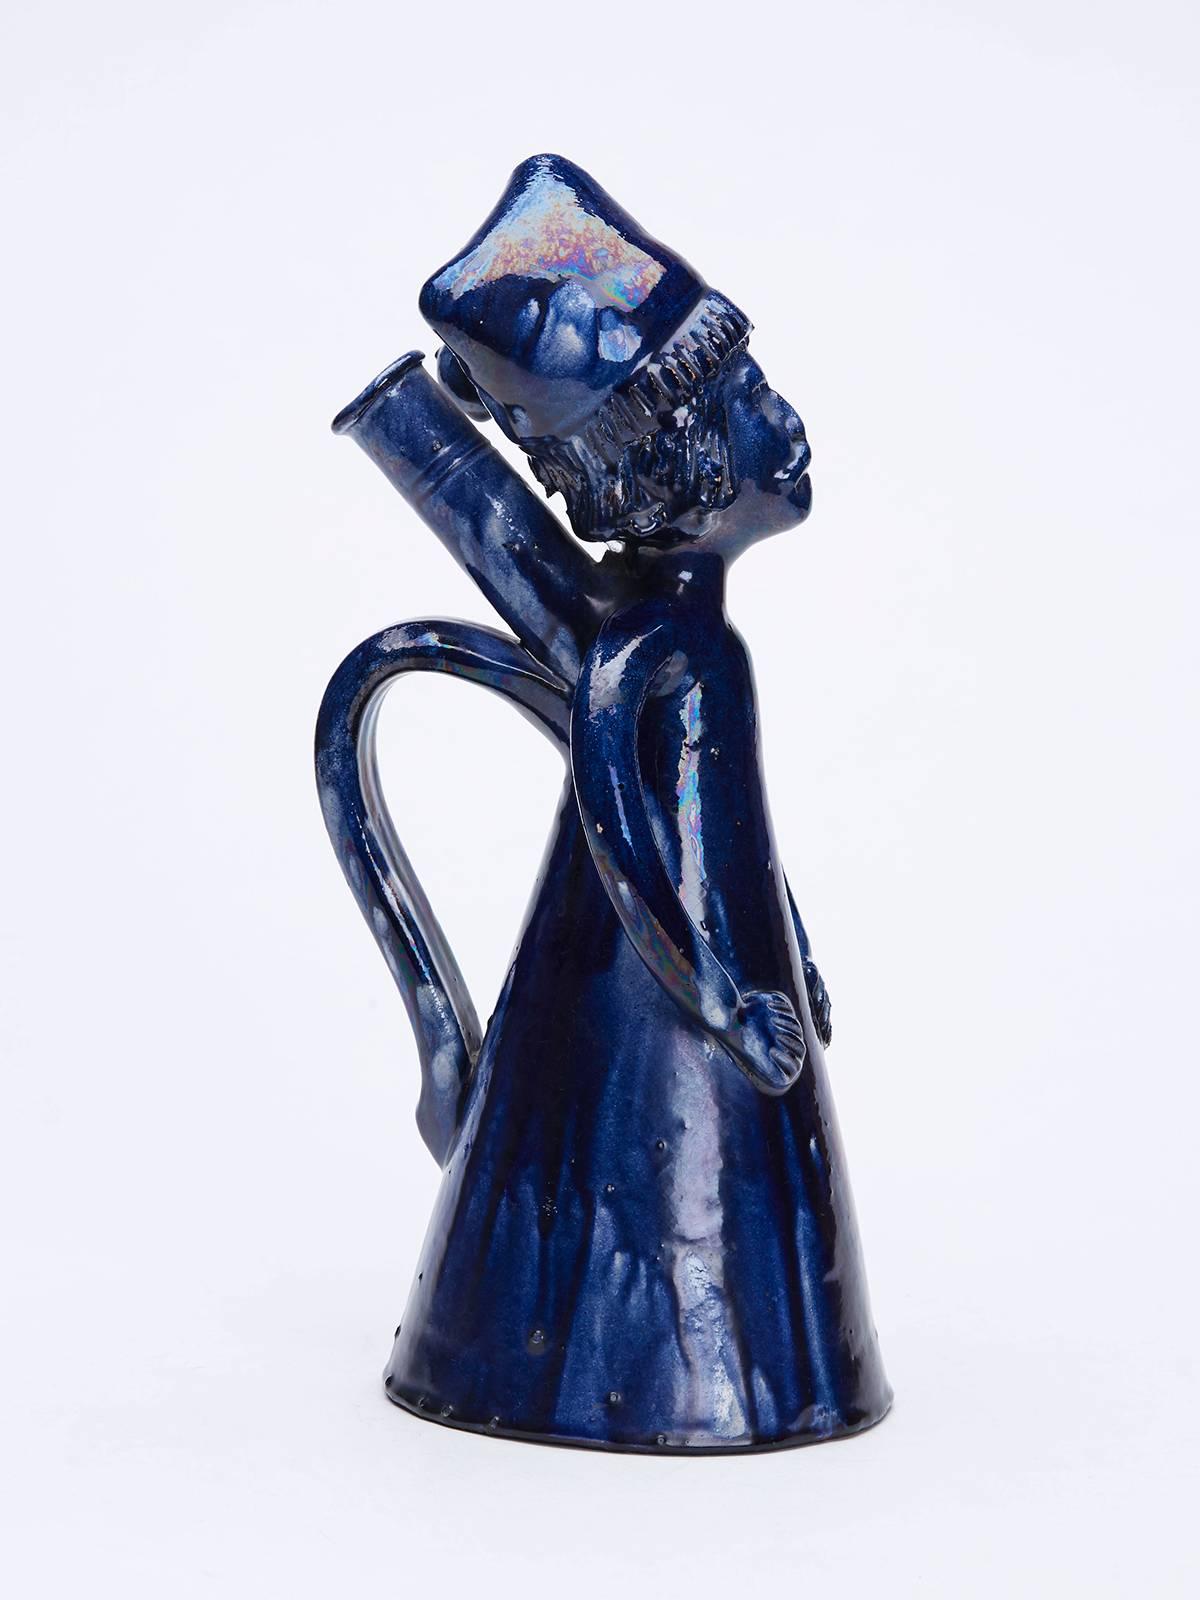 Un ancien pichet ou flacon d'art populaire en poterie de terre rouge émaillée bleue, représentant un homme portant une chemise de nuit et un bonnet de nuit, avec un bec verseur derrière la tête de l'homme, une poignée de transport en dessous et des